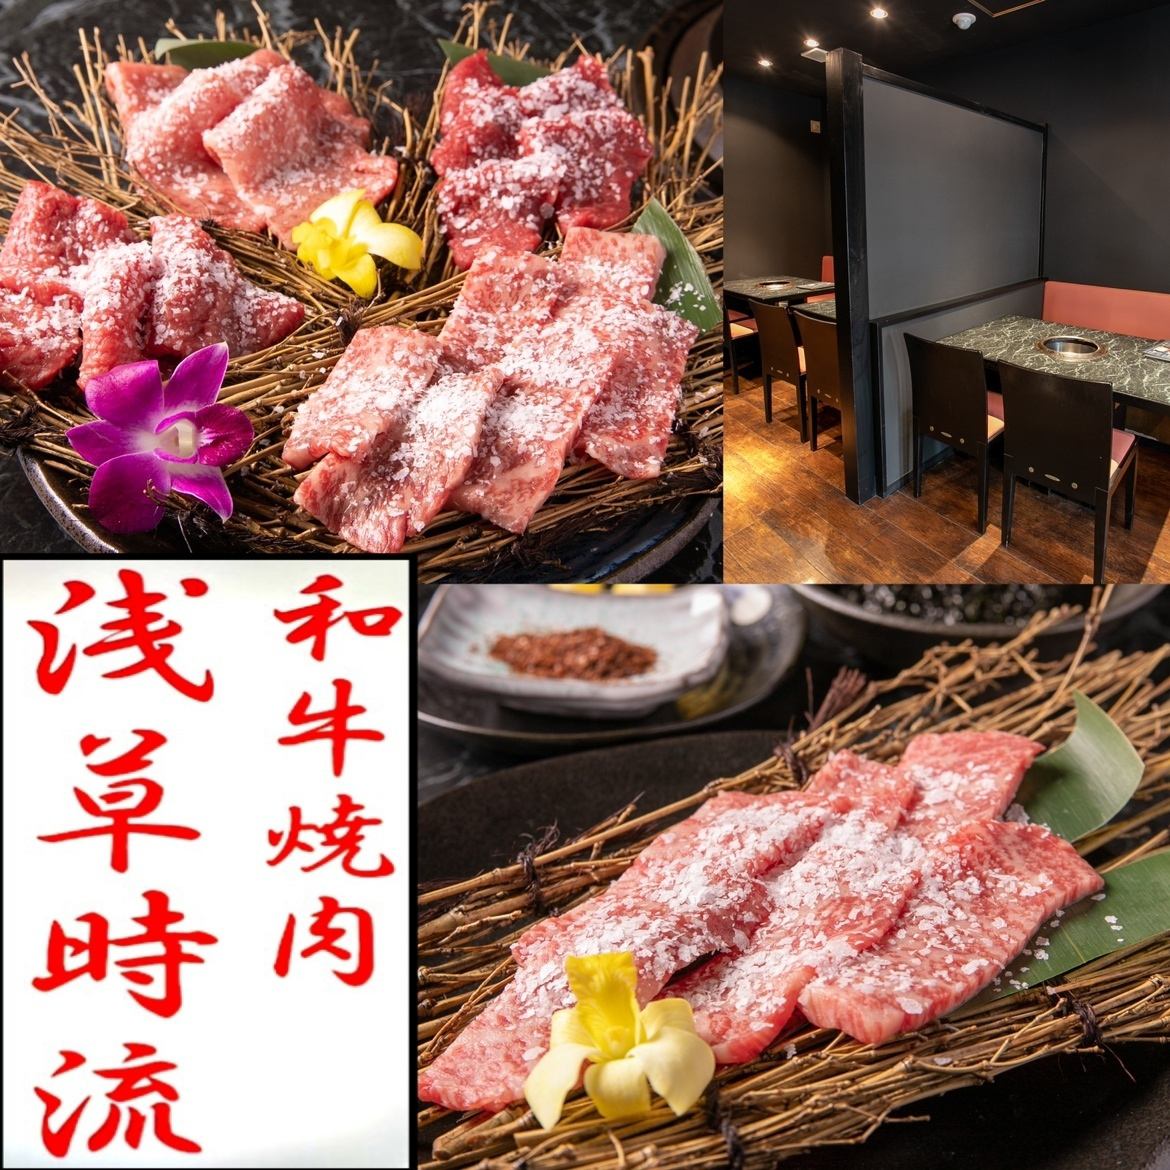 아사쿠사역・다와라마치역에서 도보 5분의 좋은 입지! 최고급 야키니쿠를 즐길 수 있는